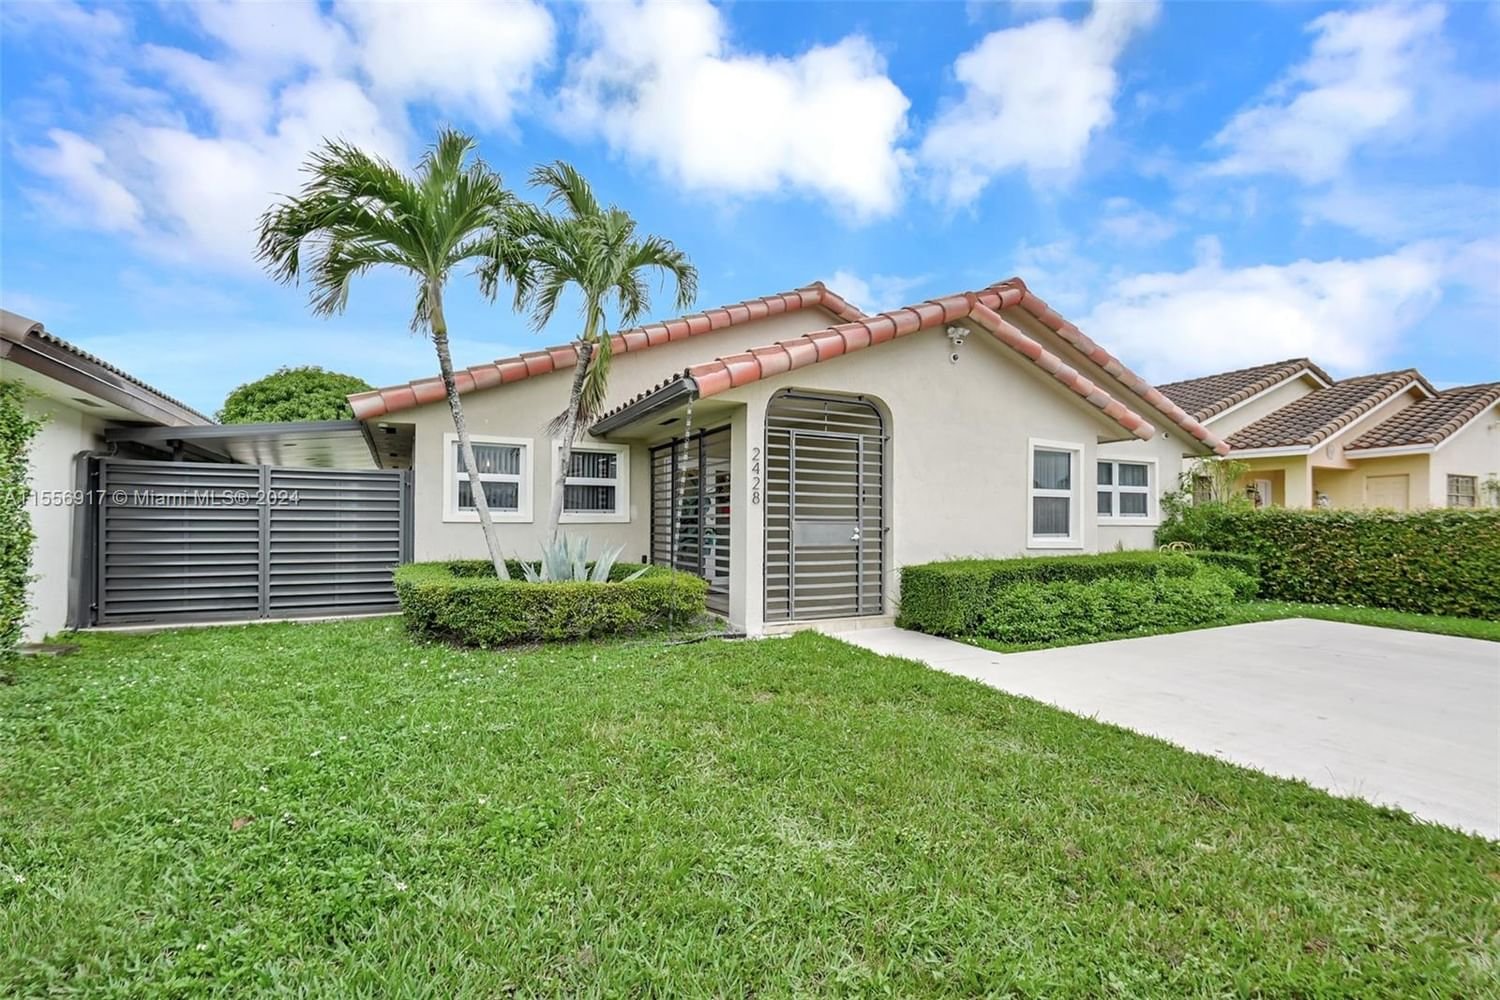 Real estate property located at 2428 138th Ct, Miami-Dade County, GREENLAND ESTATES, Miami, FL